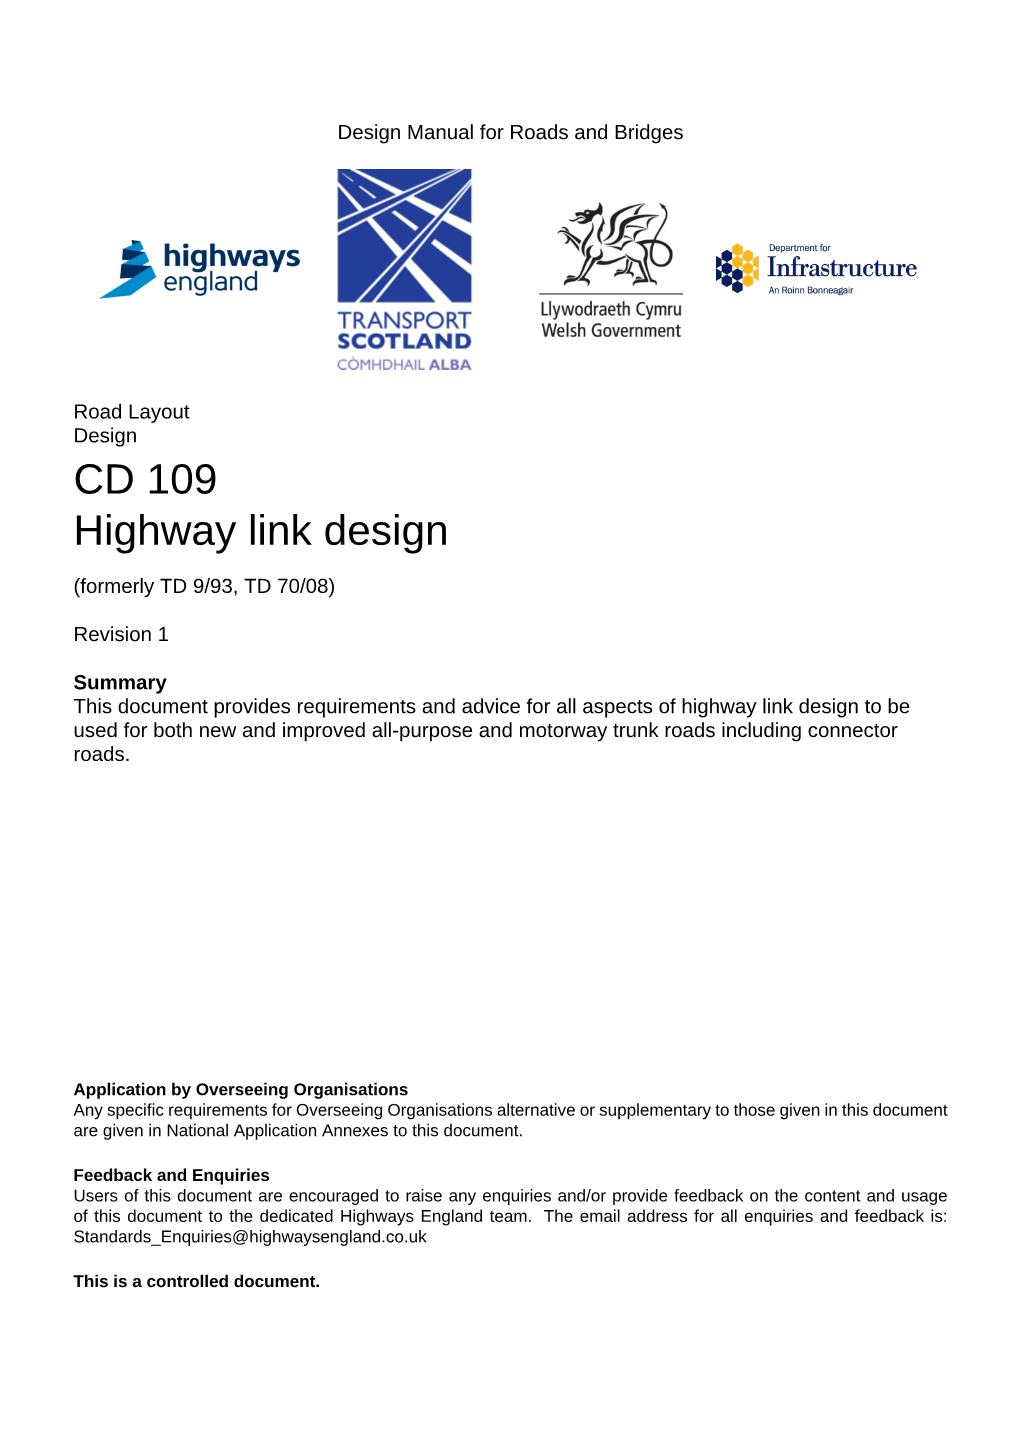 CD 109 Highway Link Design